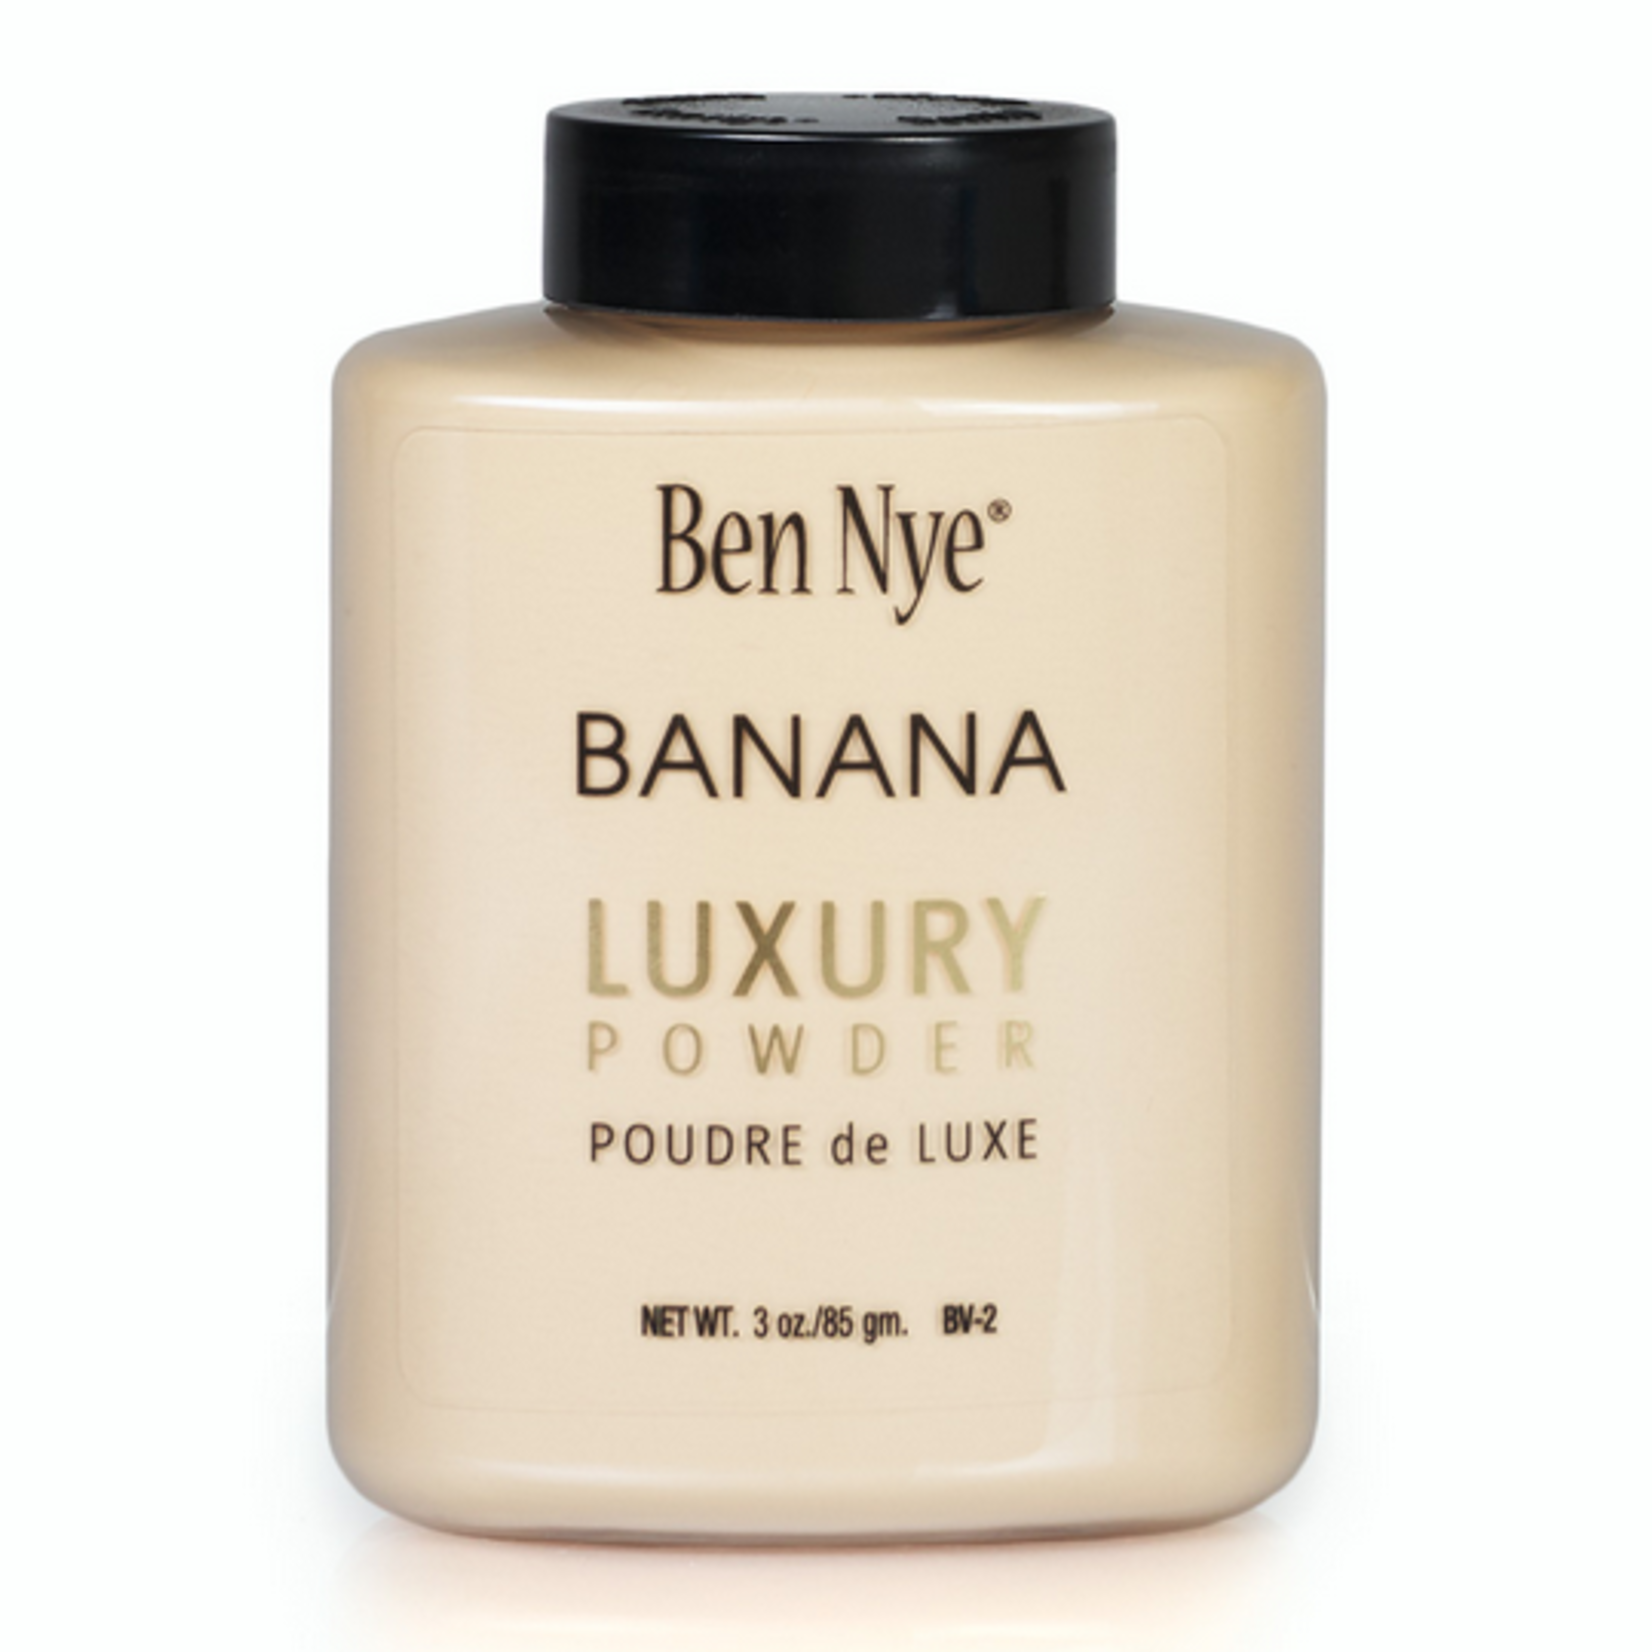 Ben Nye Ben Nye BV-0 Banana Luxury Powder Jar .92oz